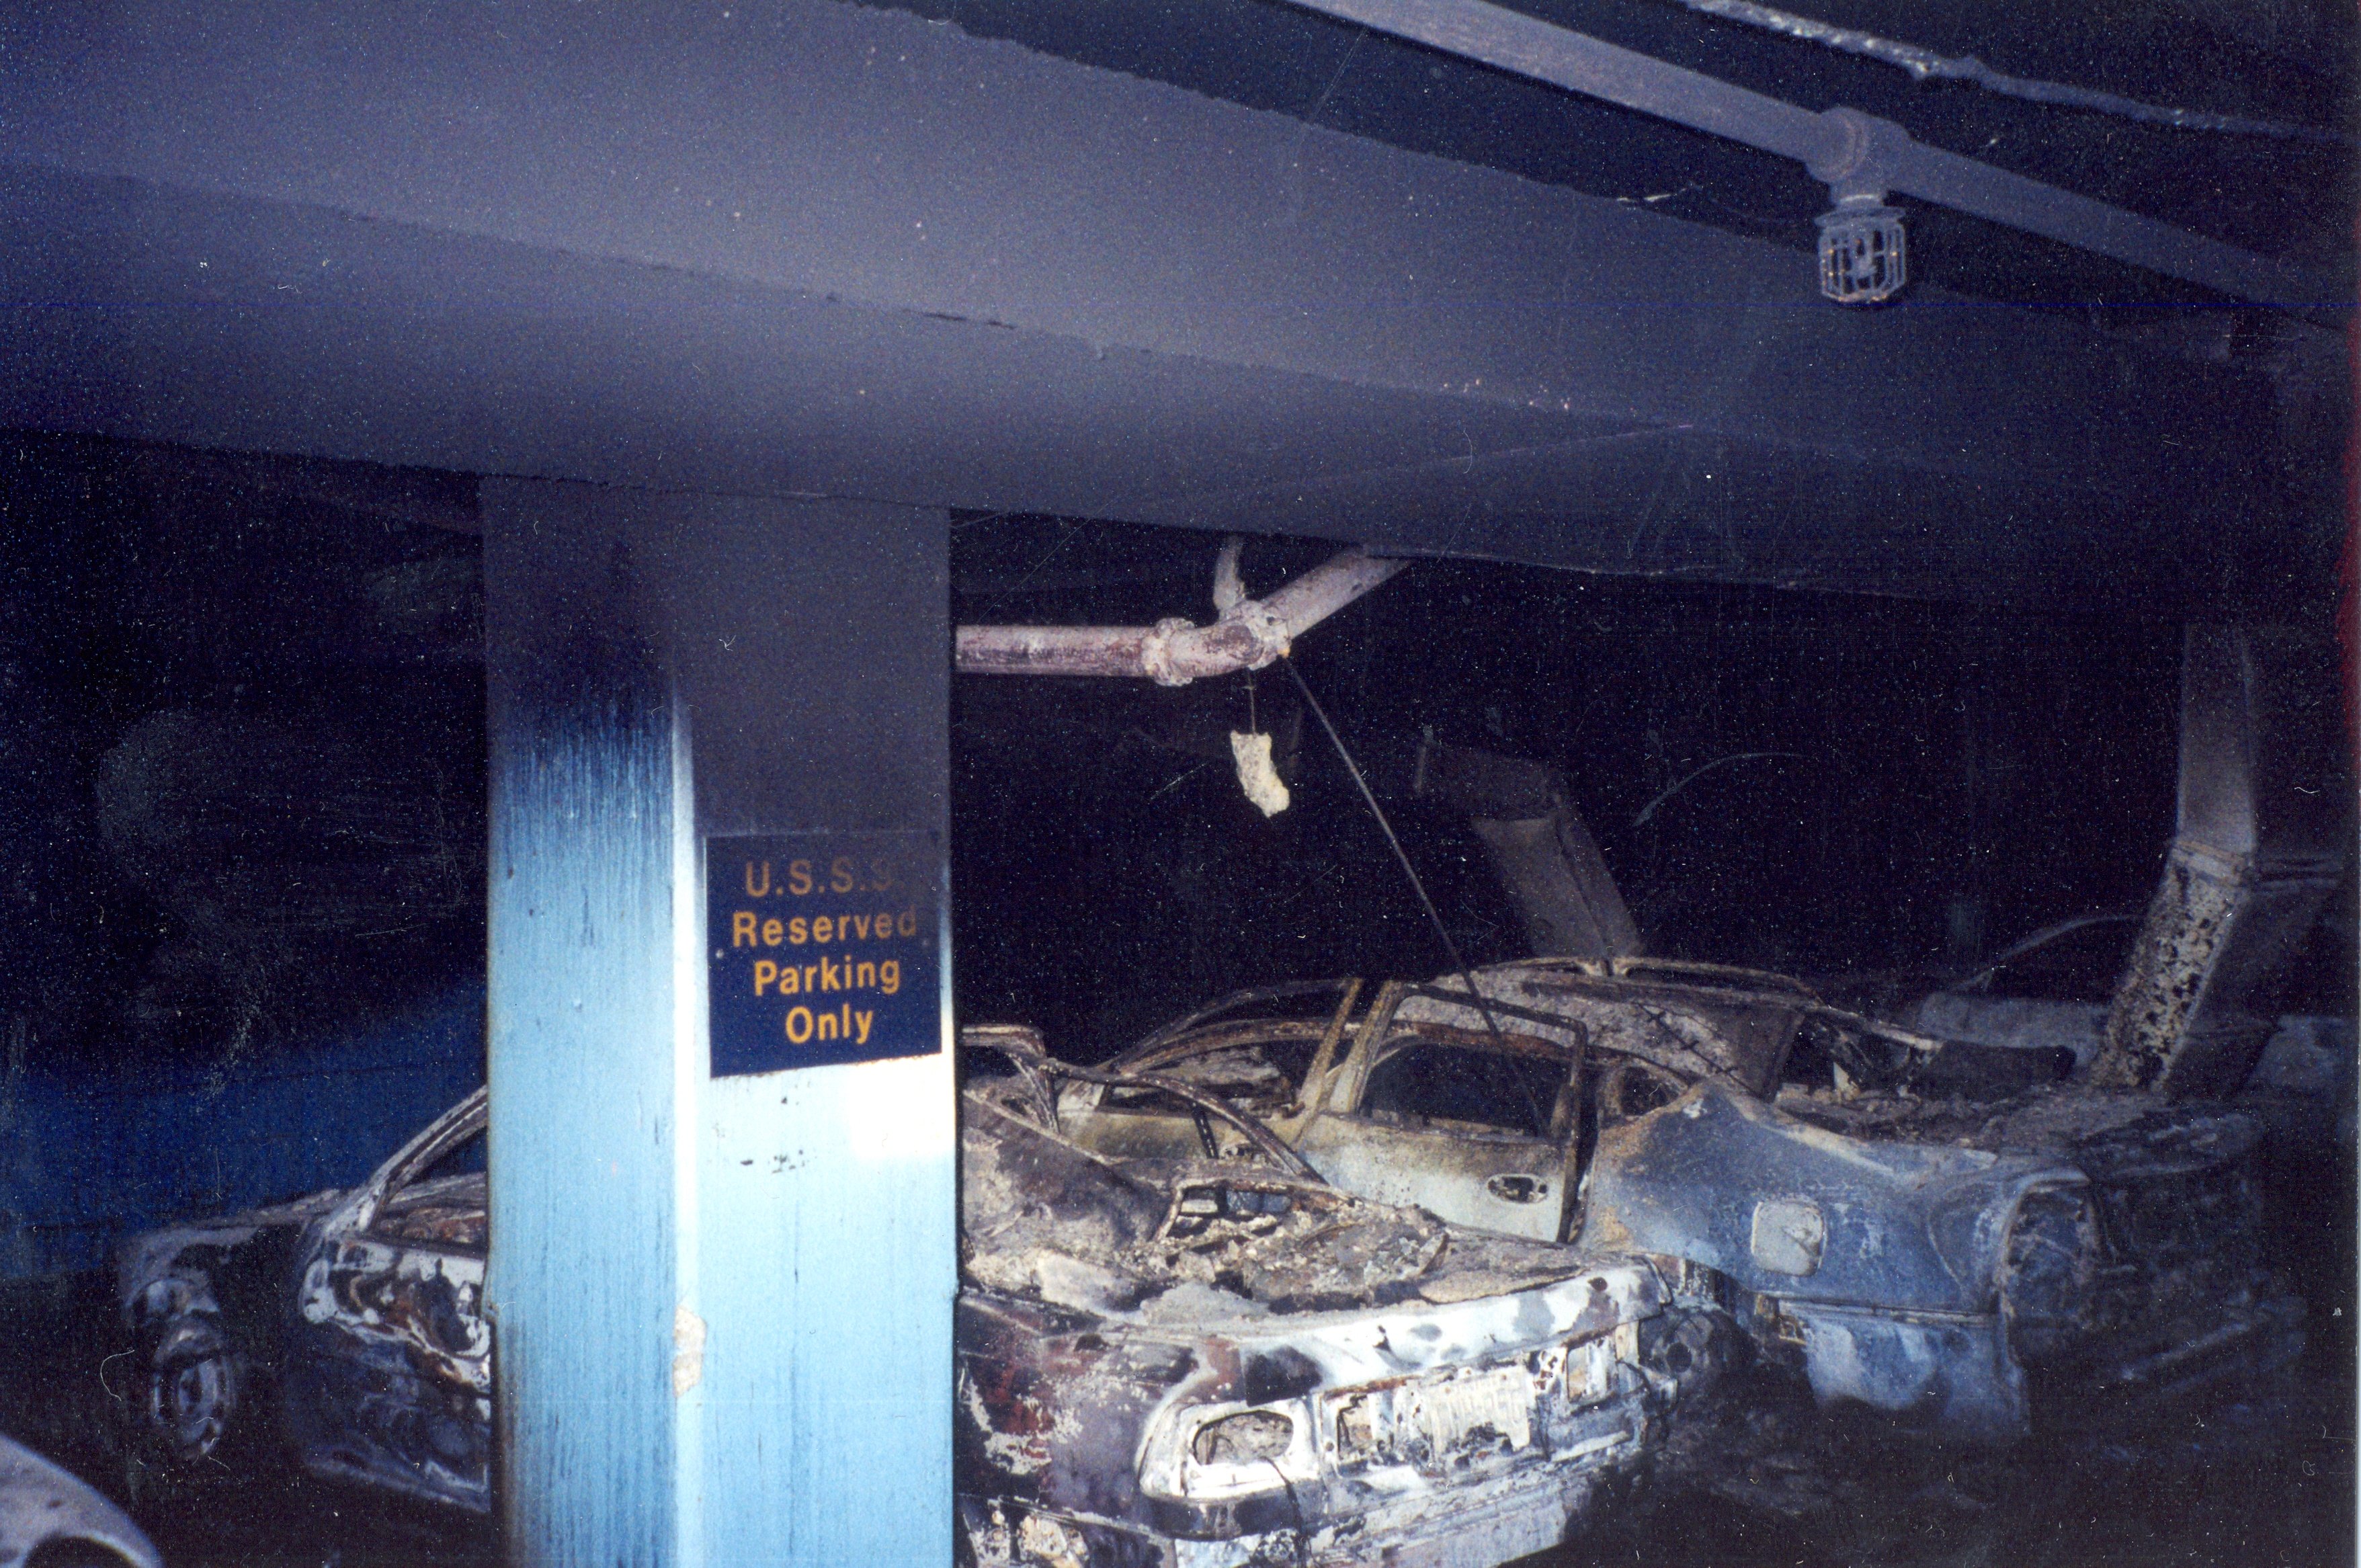 Сколько умерло людей во время теракта. Трагедия в 2001 году в Америке. Фото с места трагедии 11 сентября 2001.